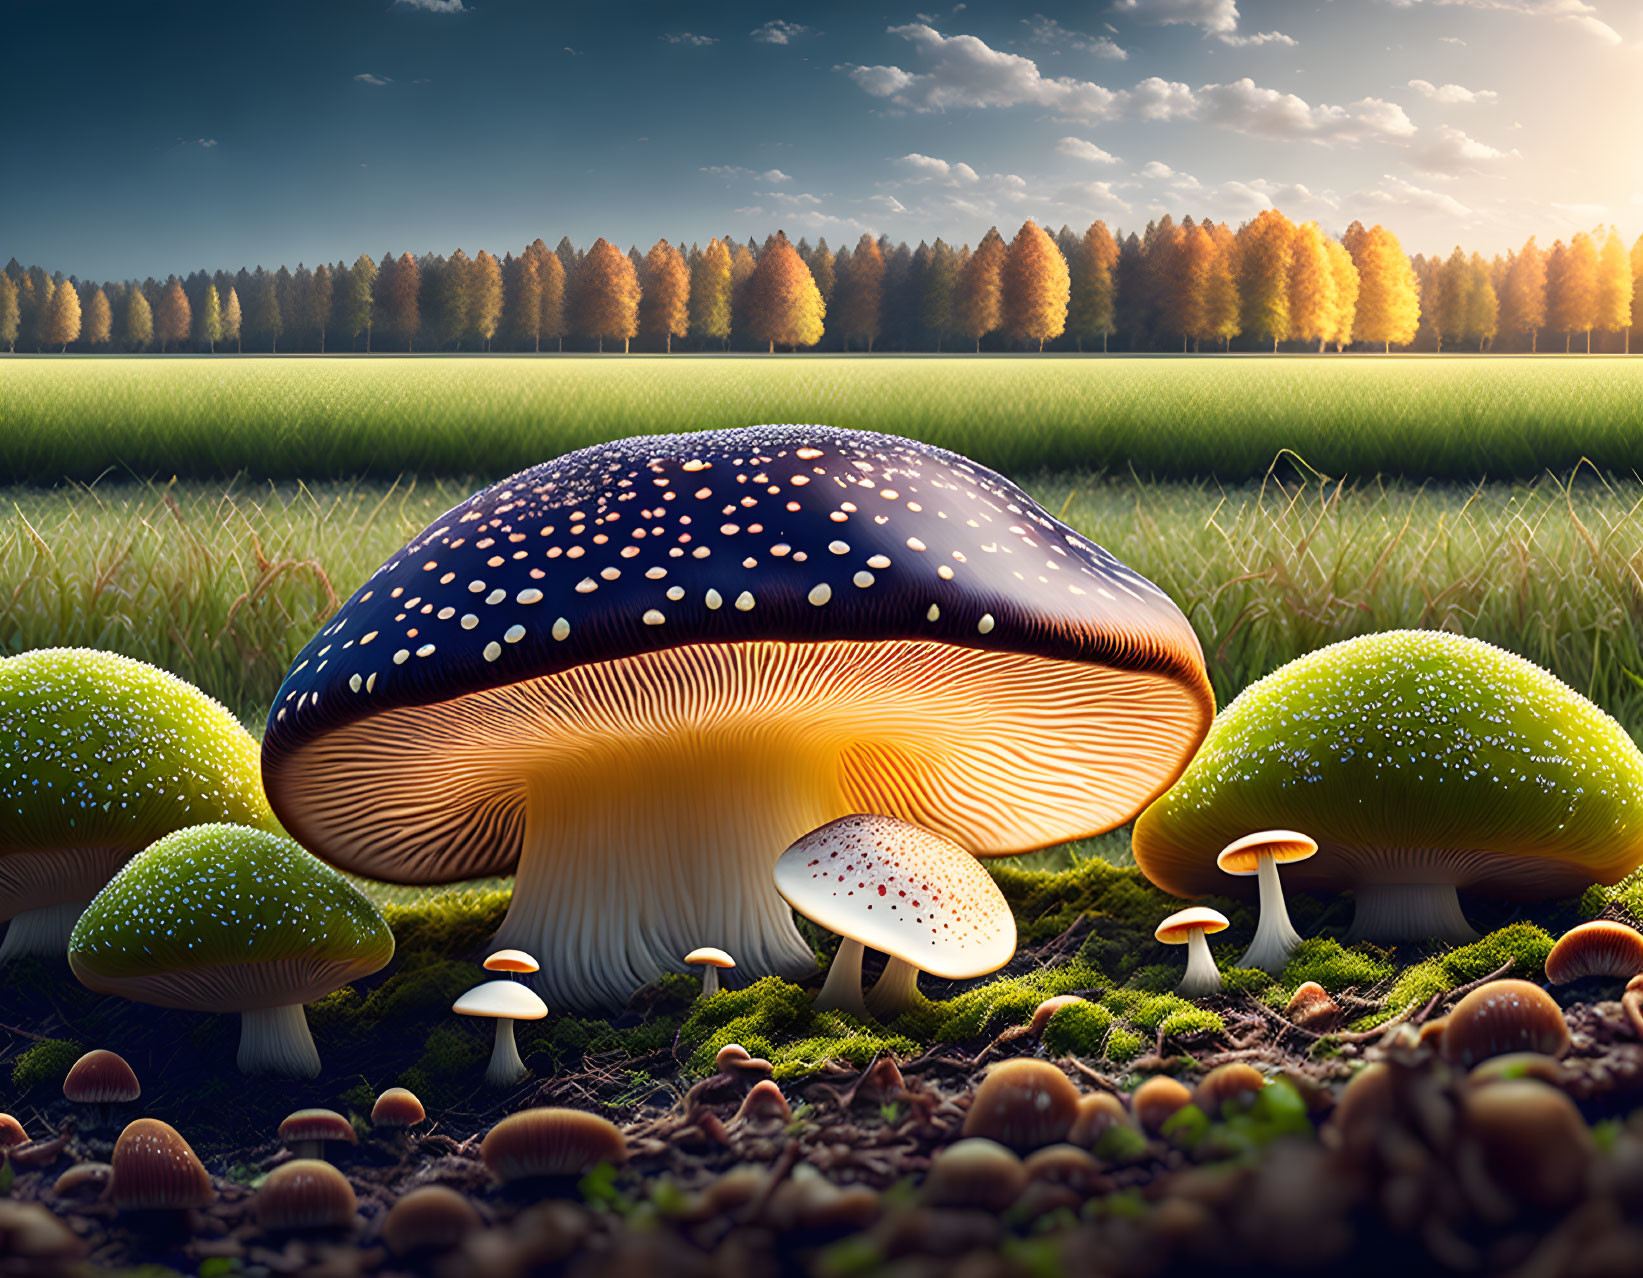 Fantastical oversized glowing mushroom scene in fairy-tale forest.